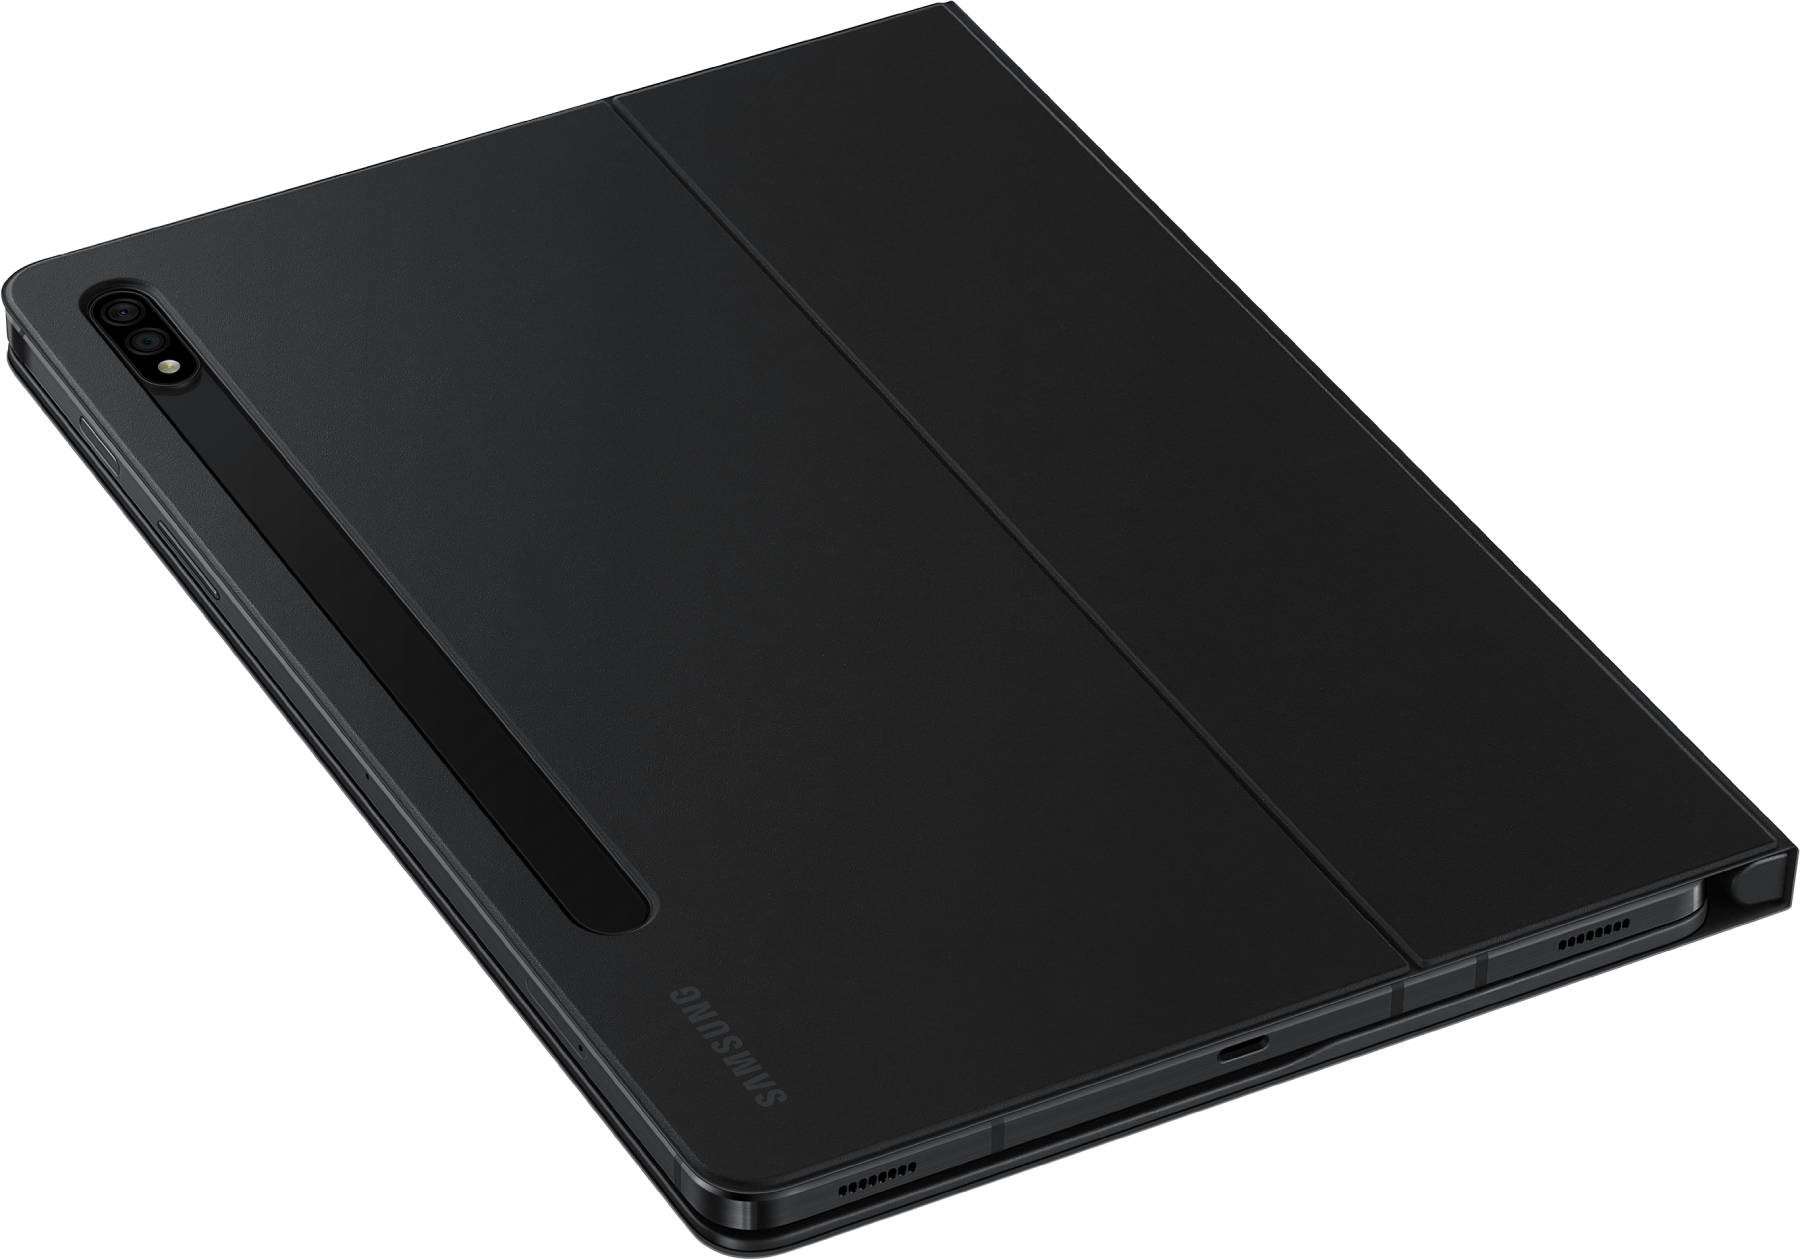 SAMSUNG Etui avec clavier bluetooth Compatible S7/S8 Noir - EF-DT630BBEGFR